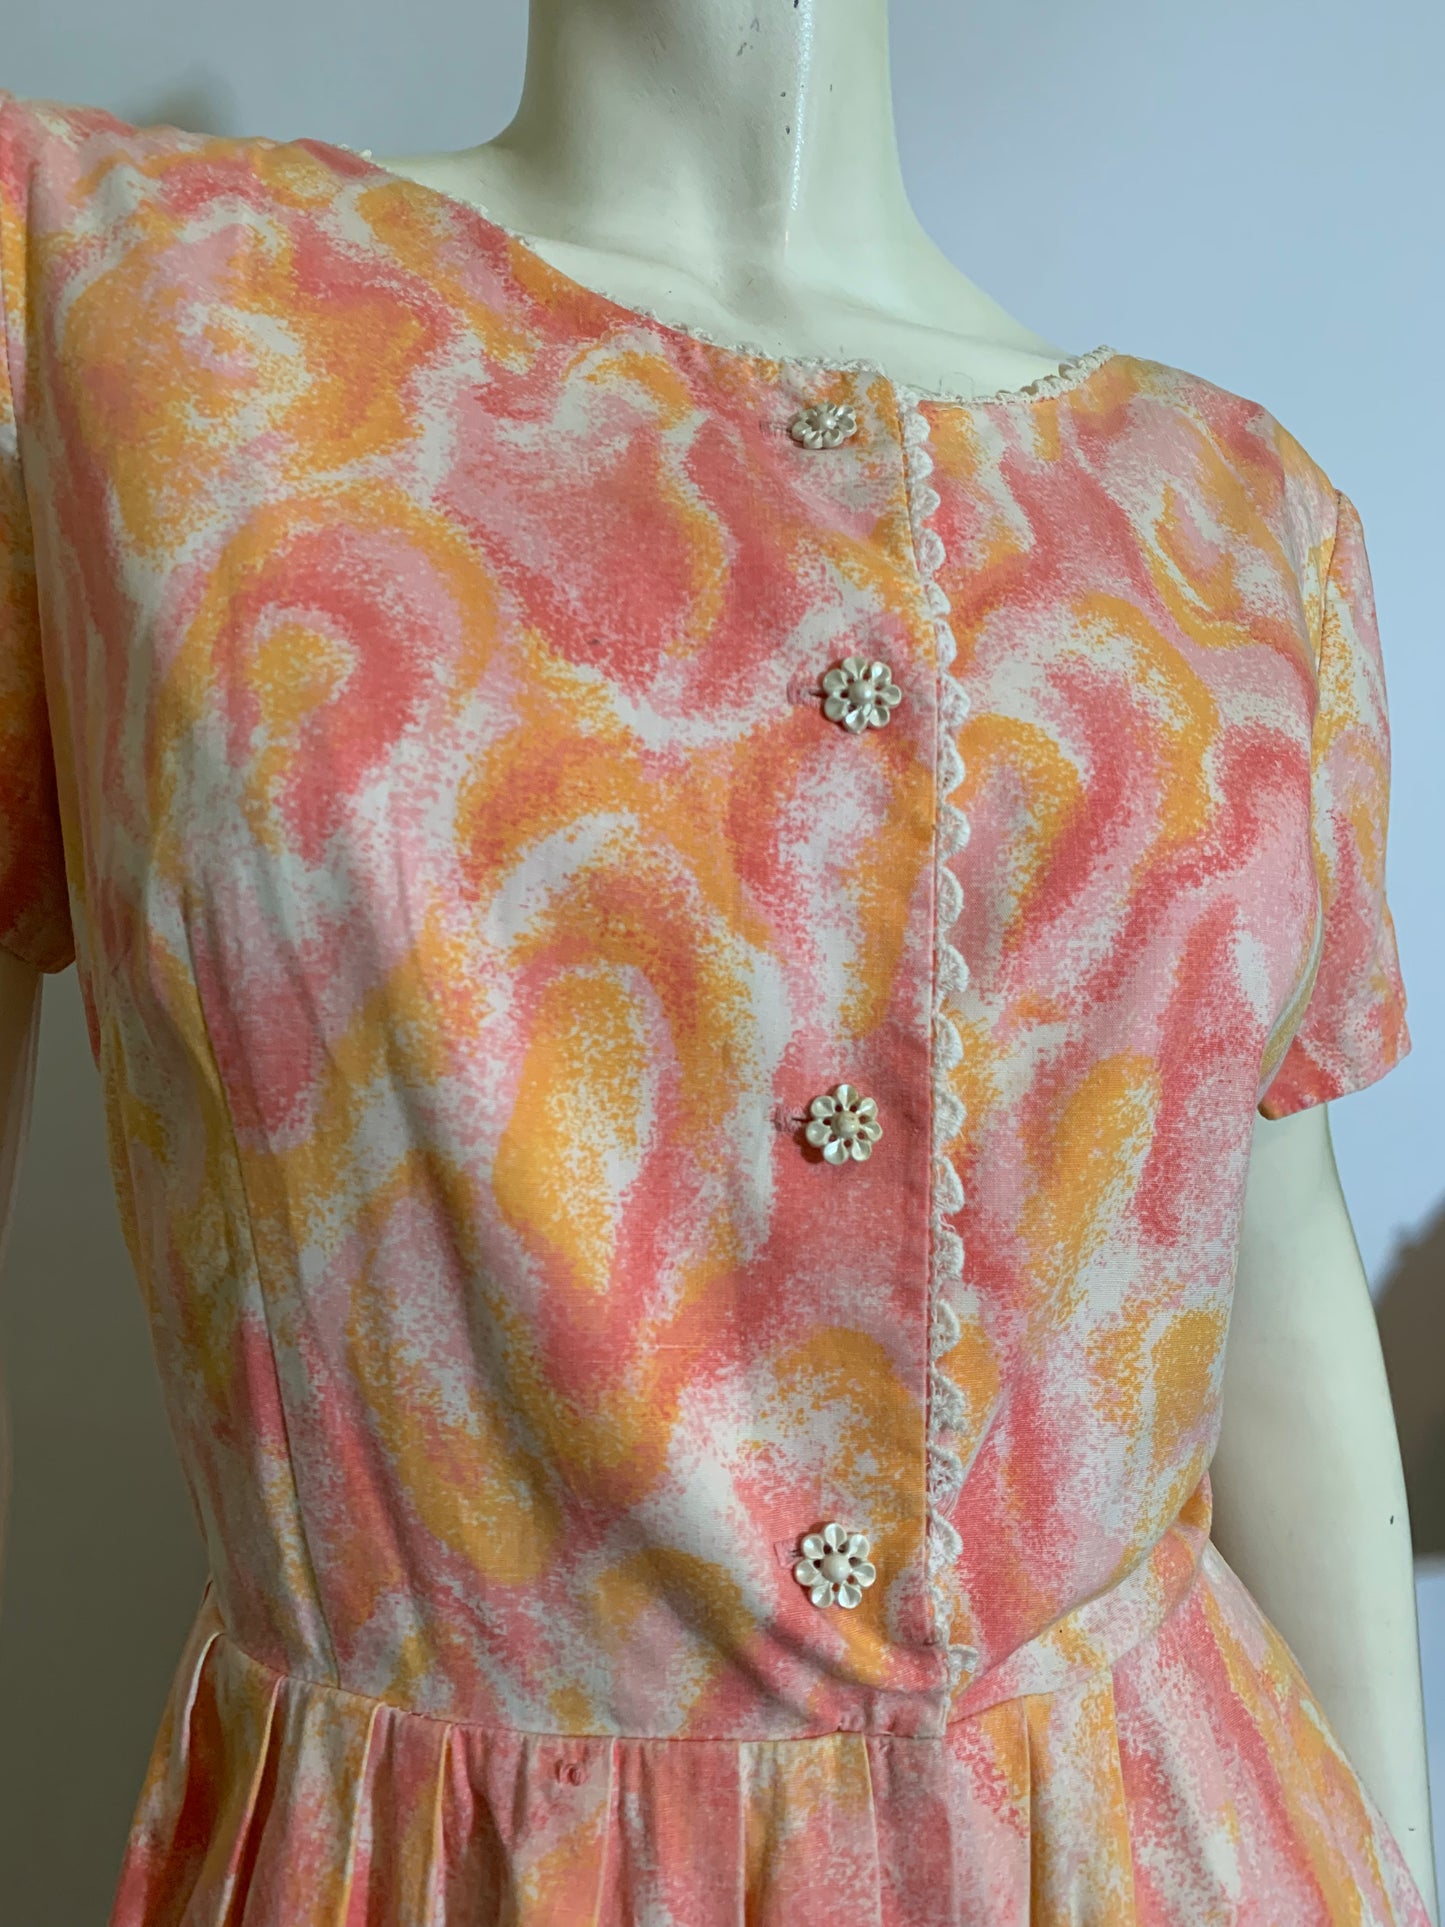 Pretty Peach Abstract Floral Print Cotton Dress circa 1960s